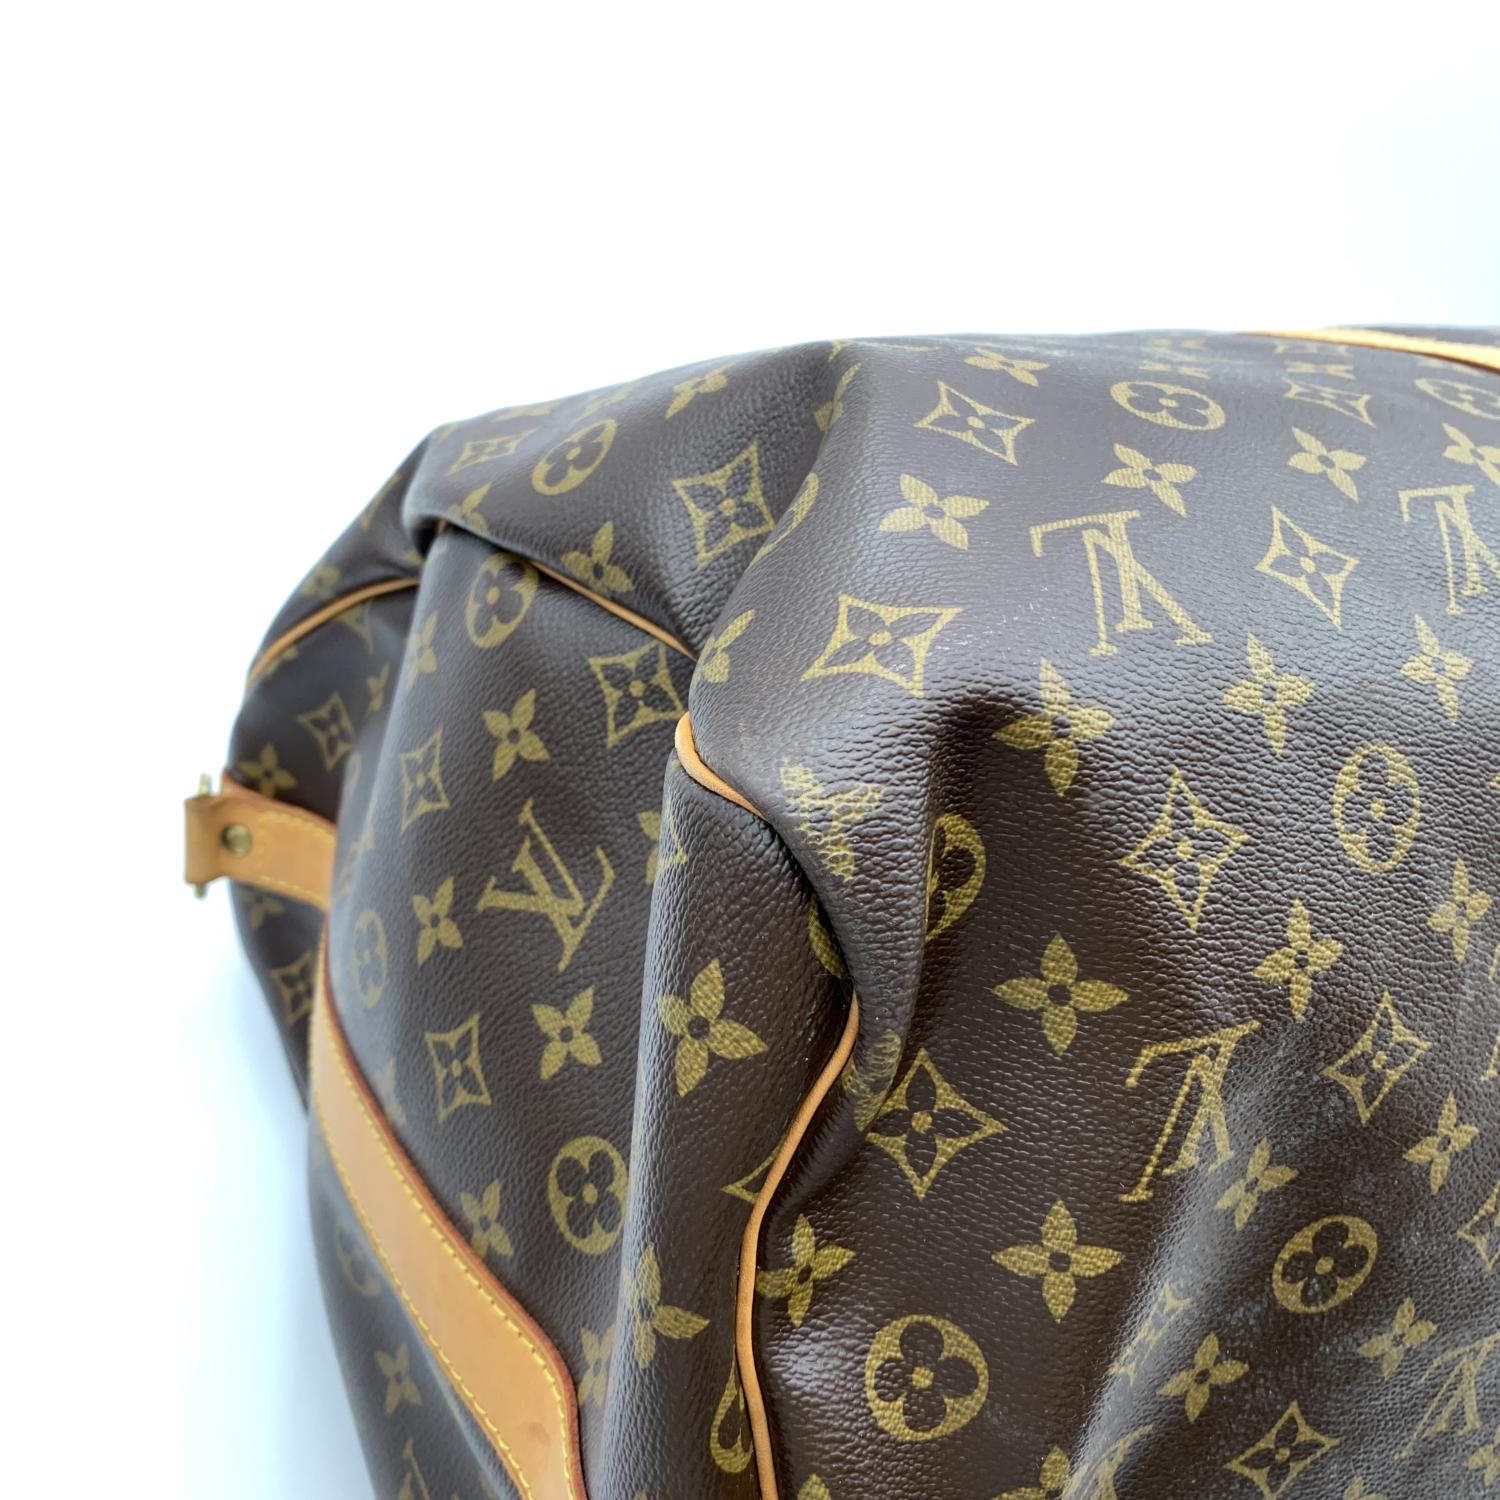 Louis Vuitton Monogram Keepall 60 Travel Large Duffle Bag M41412 8